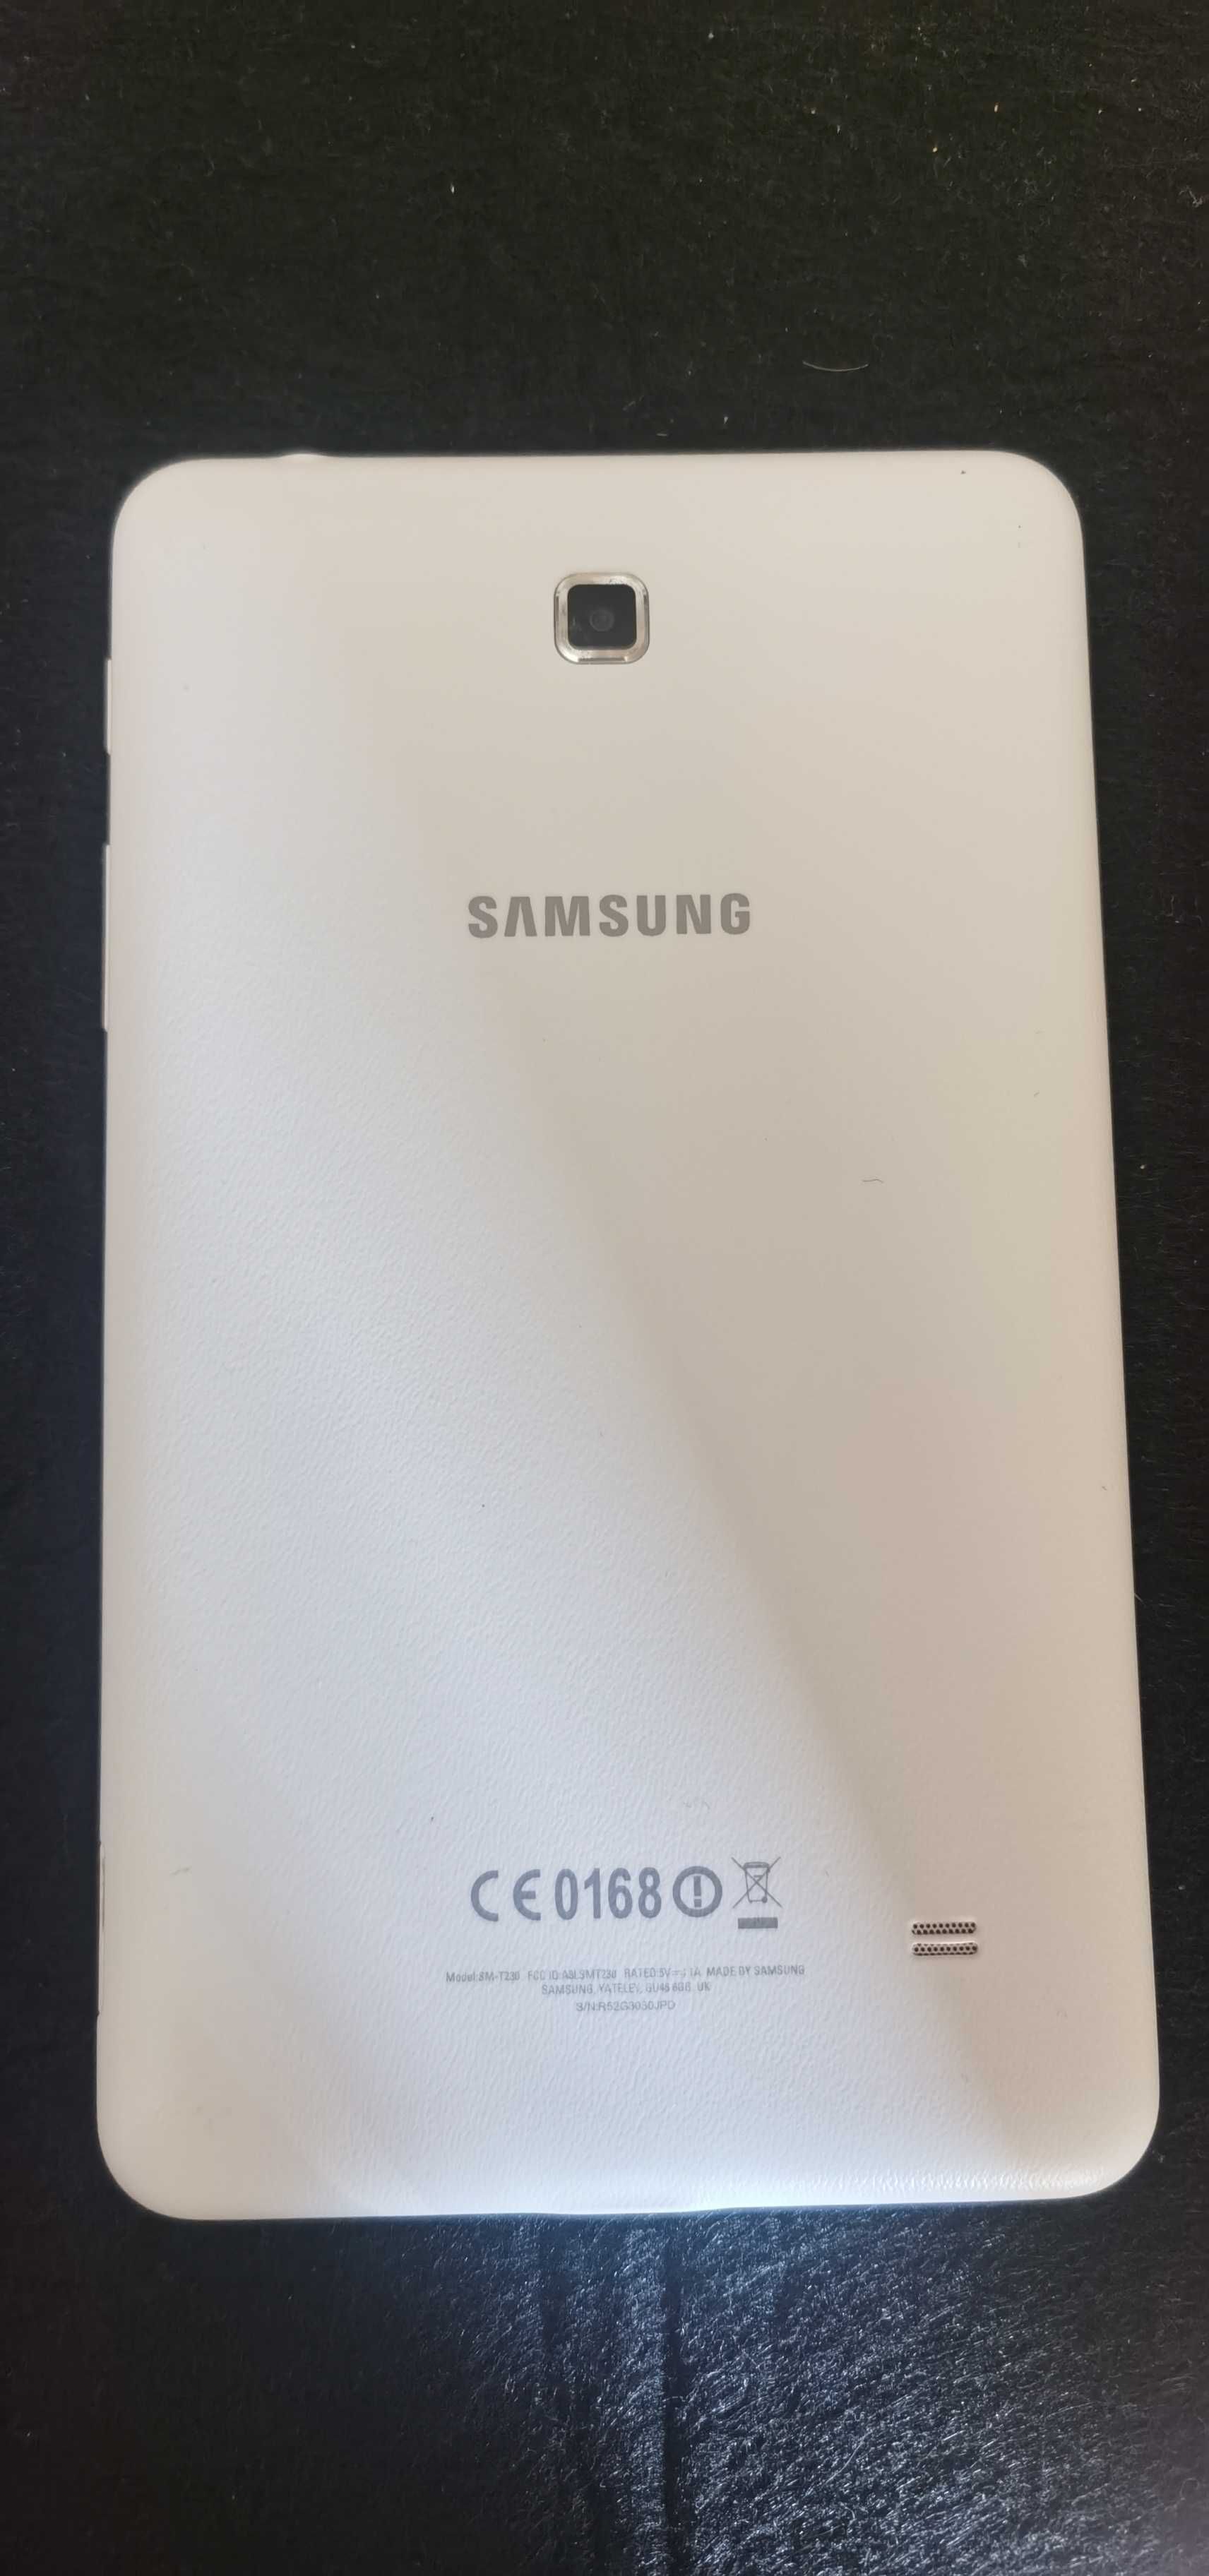 Samsung tab 4 sm-t230